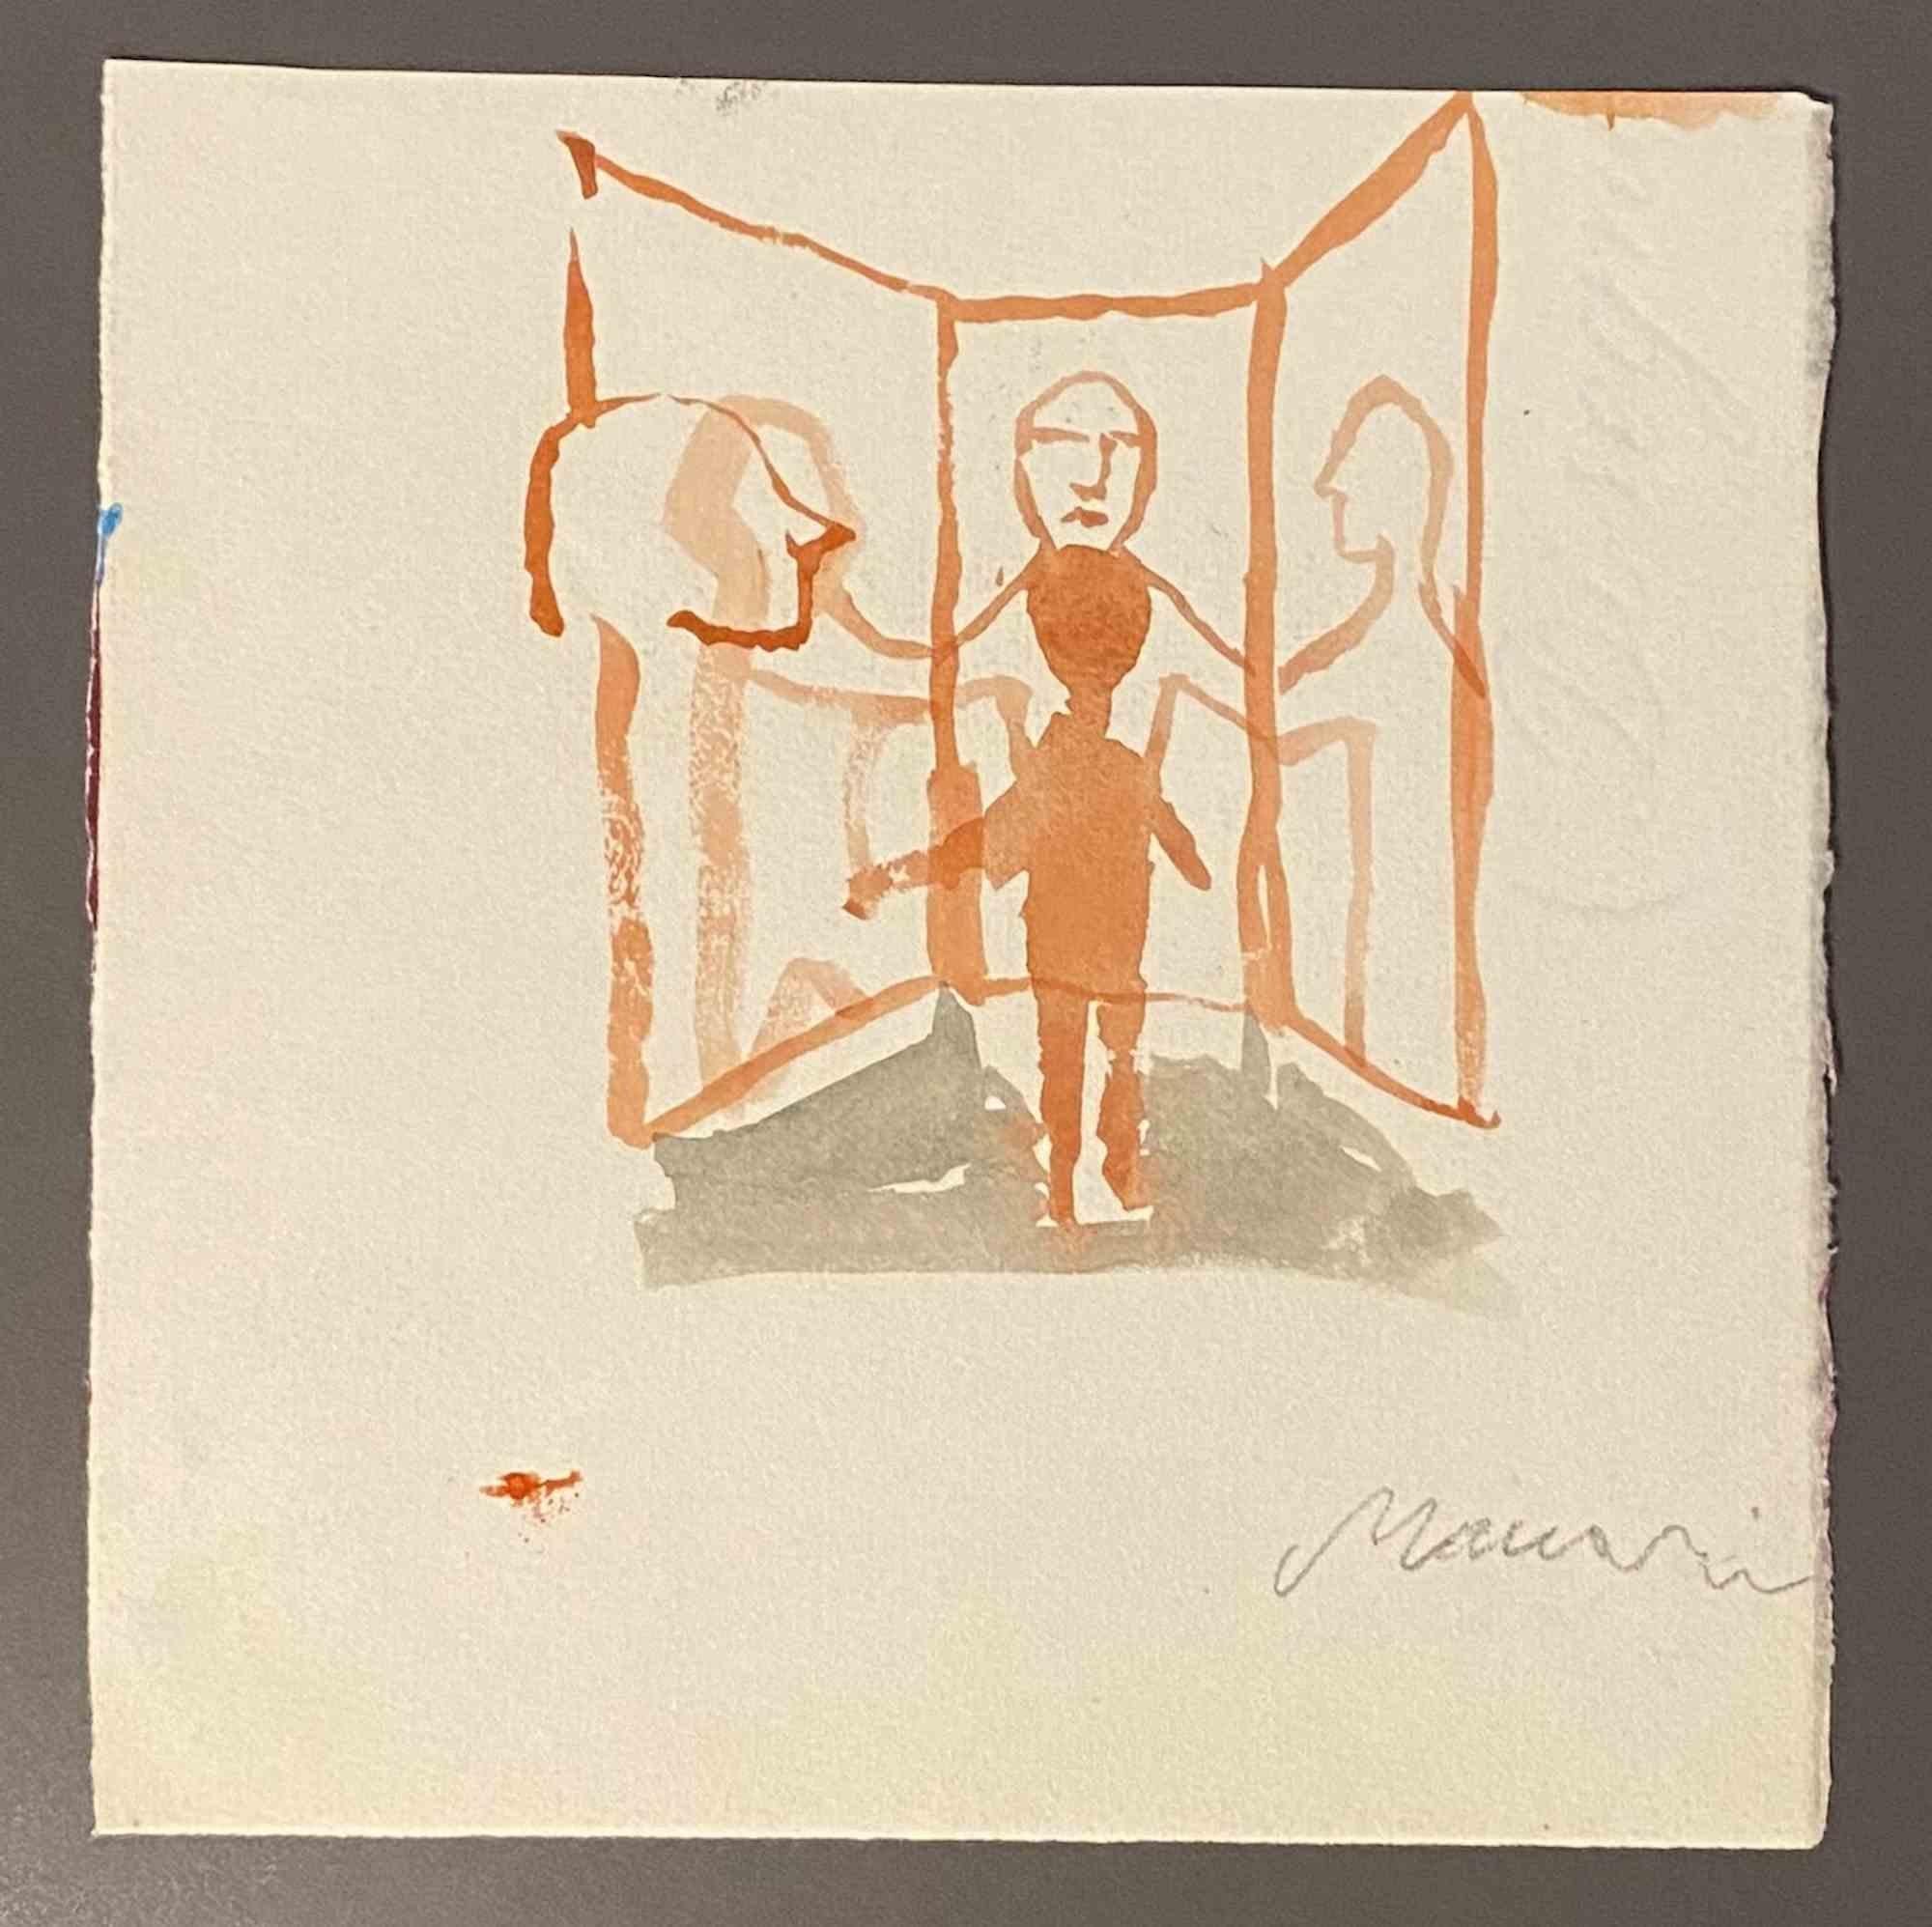 Der Spiegel ist eine Aquarell-Zeichnung von Mino Maccari  (1924-1989) in der Mitte des 20. Jahrhunderts.

Handsigniert auf der Unterseite.

Gute Bedingungen.

Mino Maccari (Siena, 1924-Rom, 16. Juni 1989) war ein italienischer Schriftsteller, Maler,